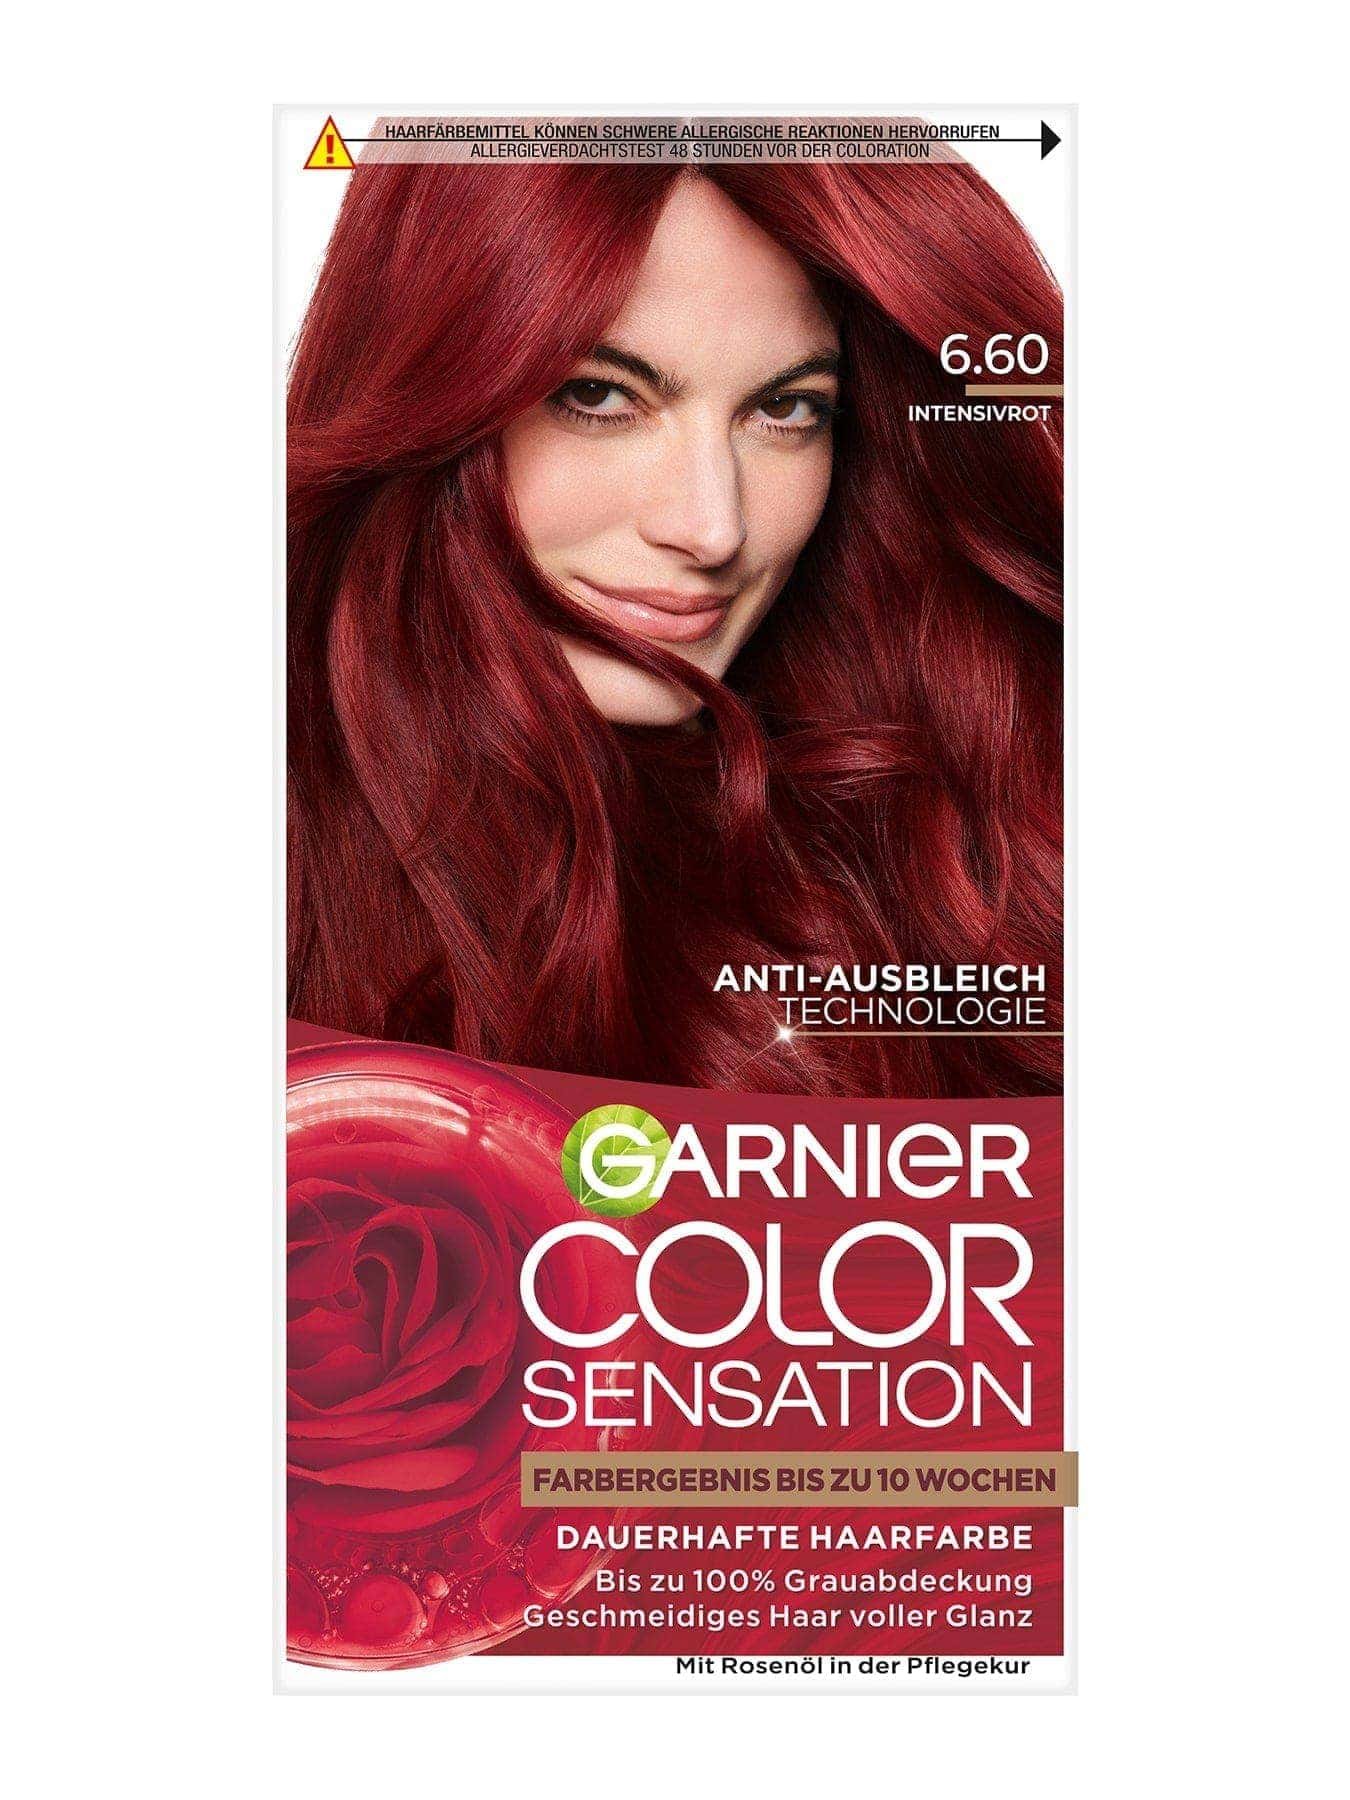 Color Sensation dauerhafte Haarfarbe 6.60 Intensivrot Produktbild